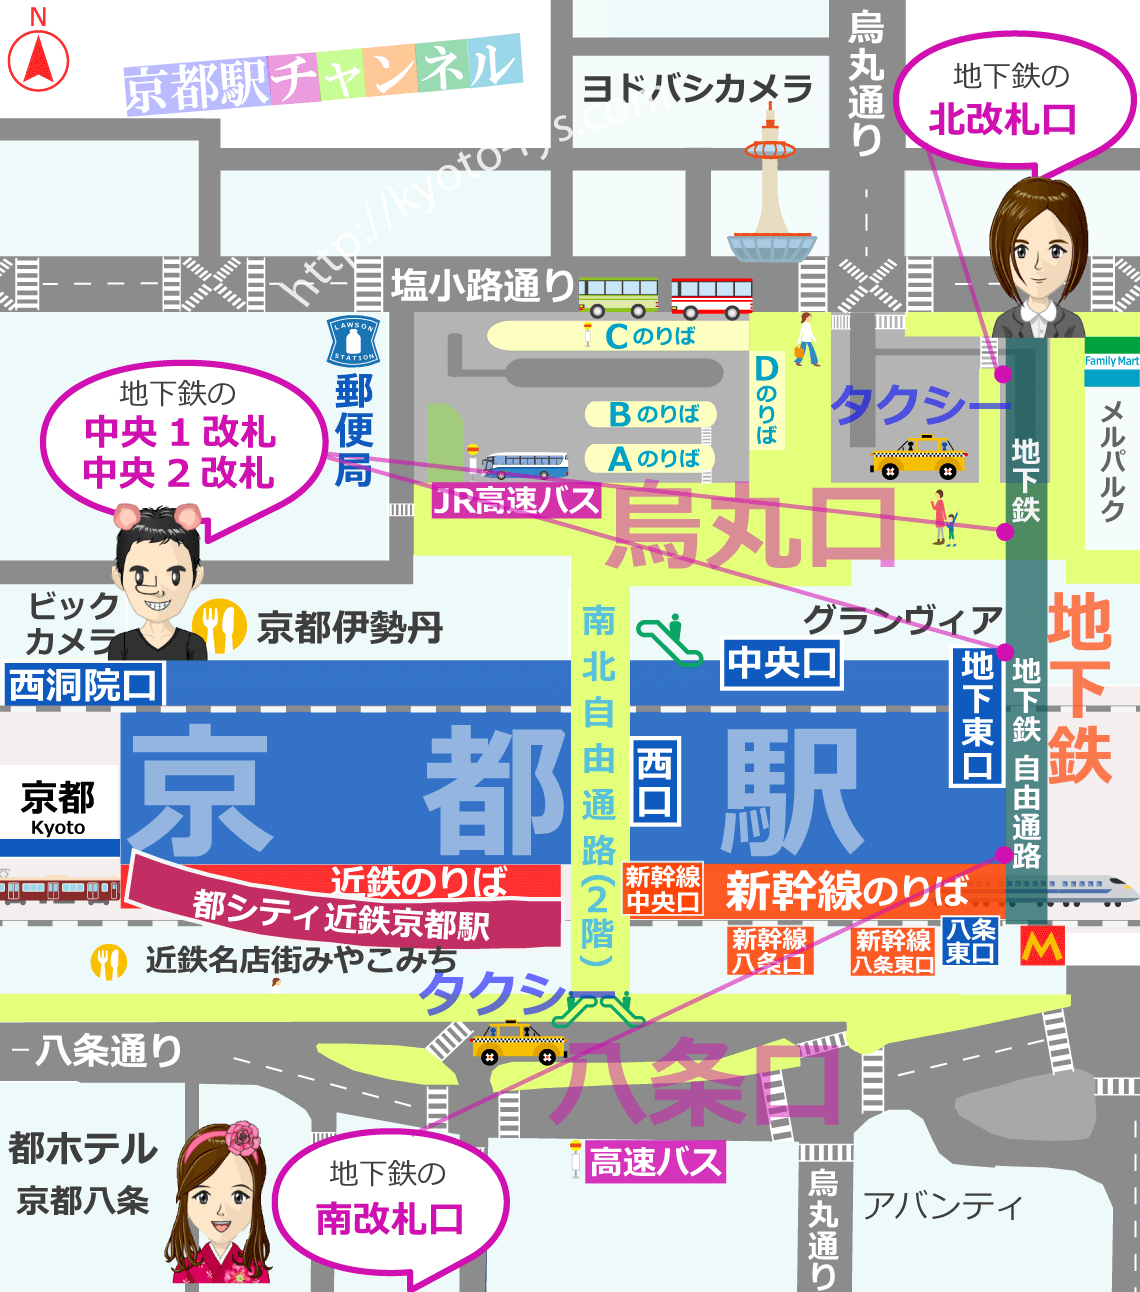 京都駅の地下鉄のりばマップ